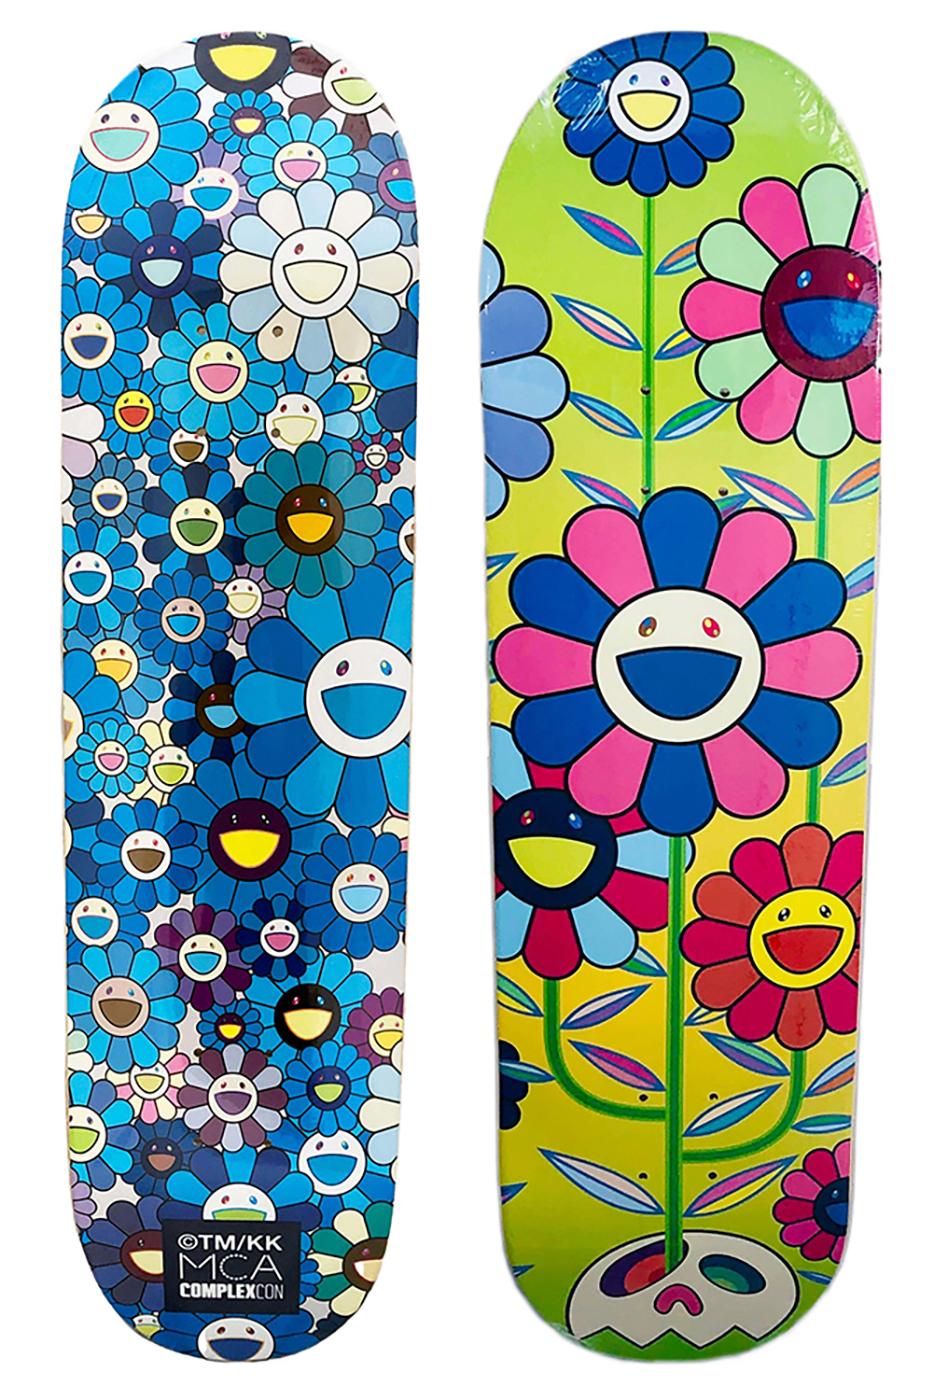 Takashi Murakami Flowers Skateboard Decks: Satz von 2 Werken:
Ein lebhaftes, hochdekoratives Skateboard-Set von Takashi Murakami, das als limitierte Serie in Verbindung mit der Murakami-Ausstellung 2017 produziert wurde: The Octopus Eats Its Own